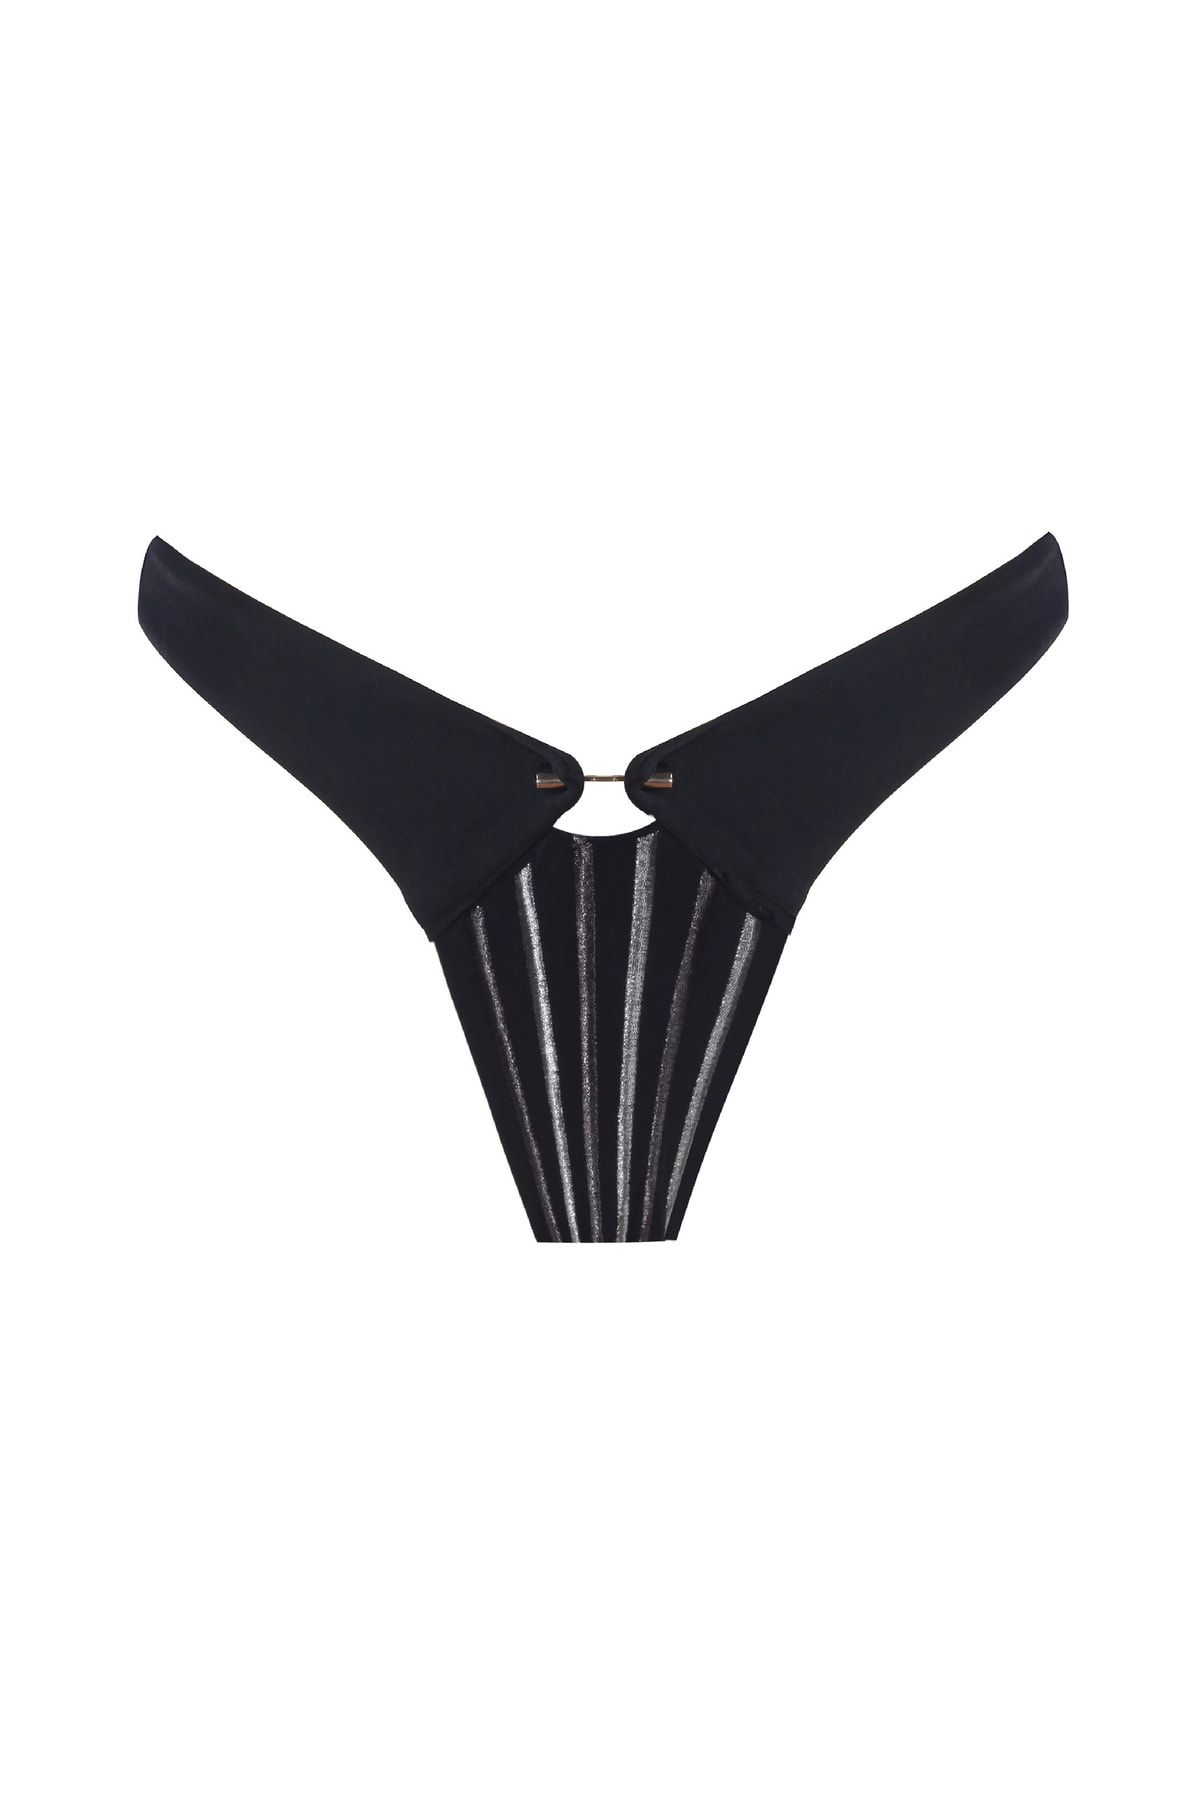 Monument Swimwear Adeena - Bikini Altı - Siyah Gümüş